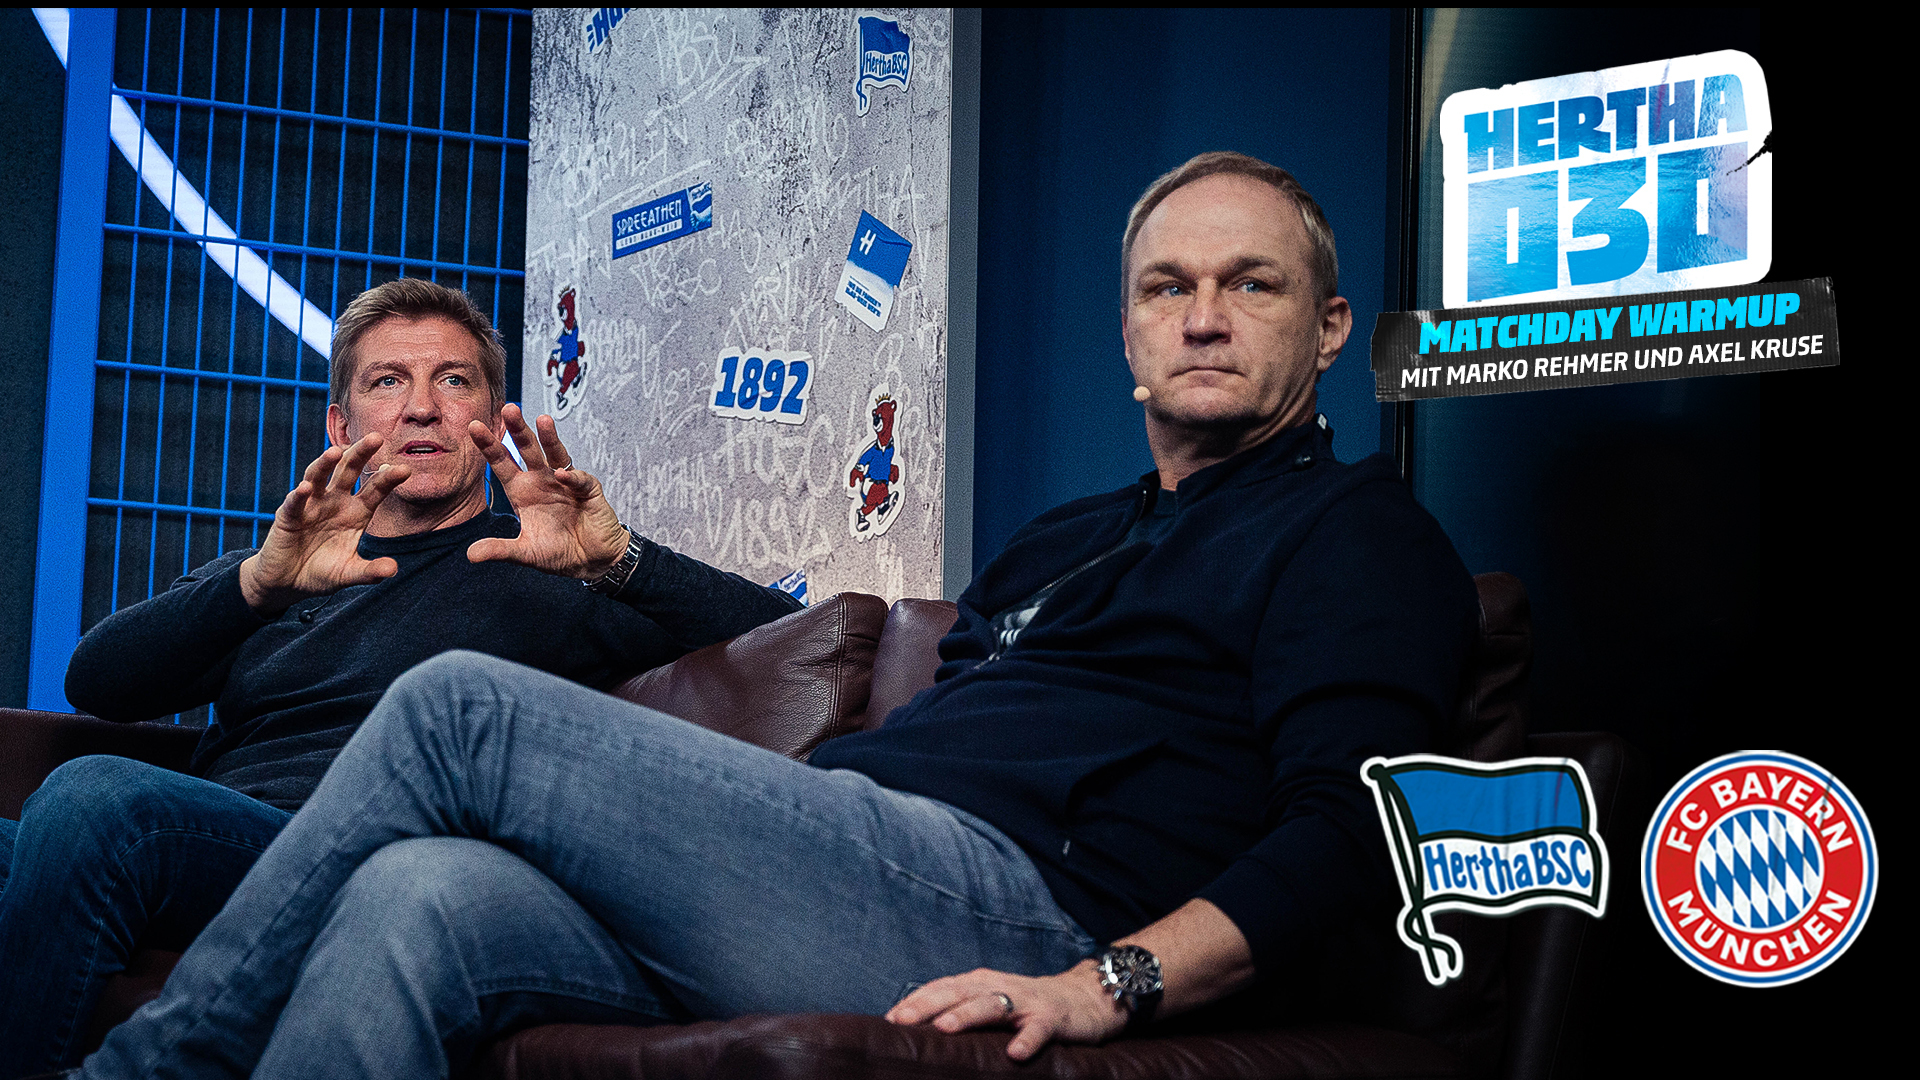 Marko Rehmer und Axel Kruse sprechen im Rahmen des 'Matchday Warmup' mit Lena von HerthaTV.